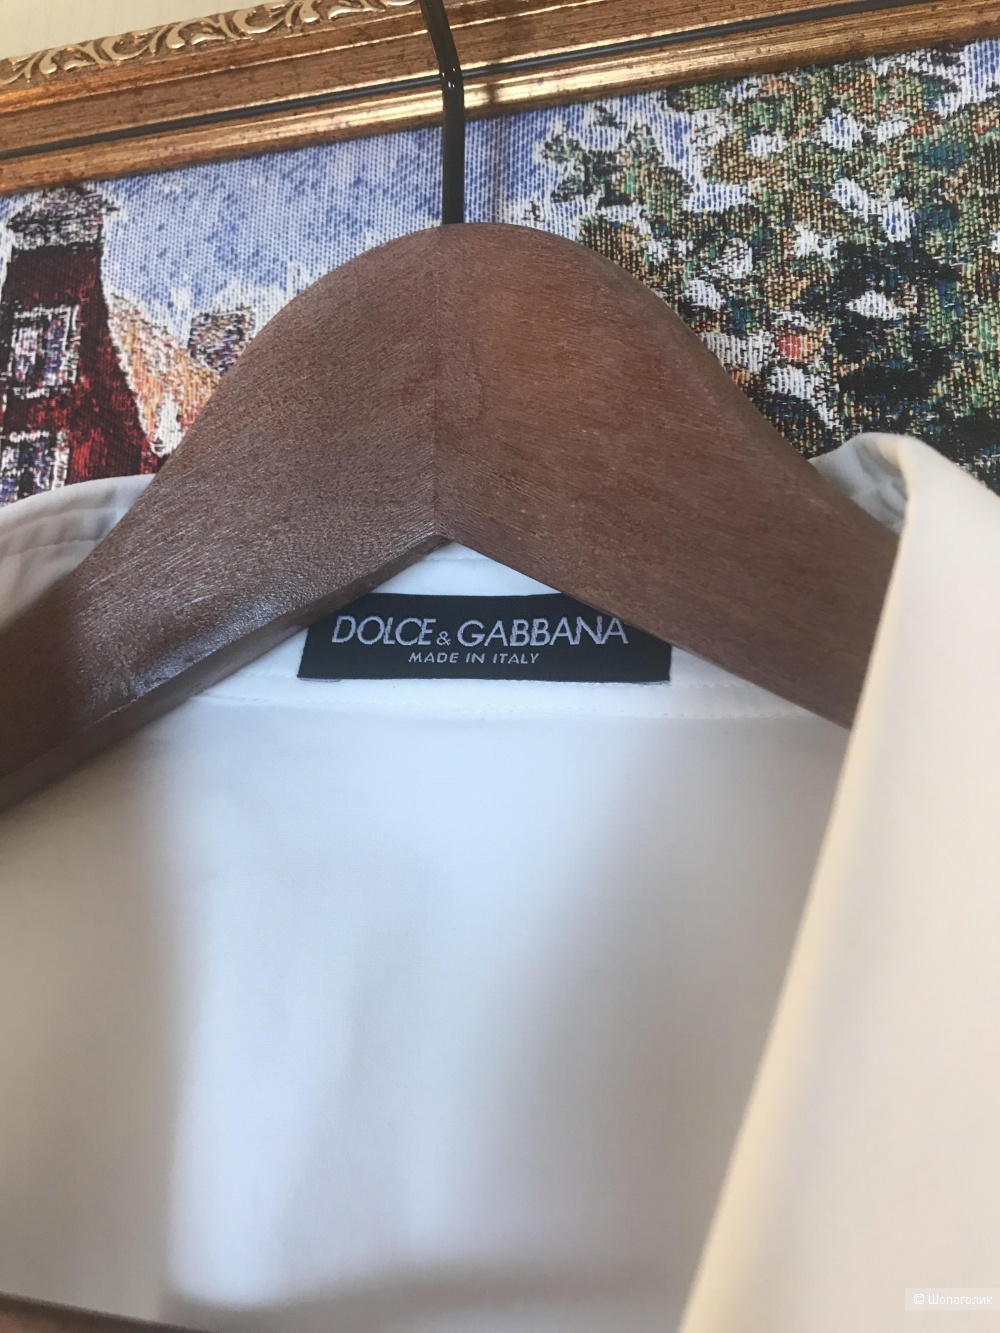 Рубашка Dolce Gabbana 46